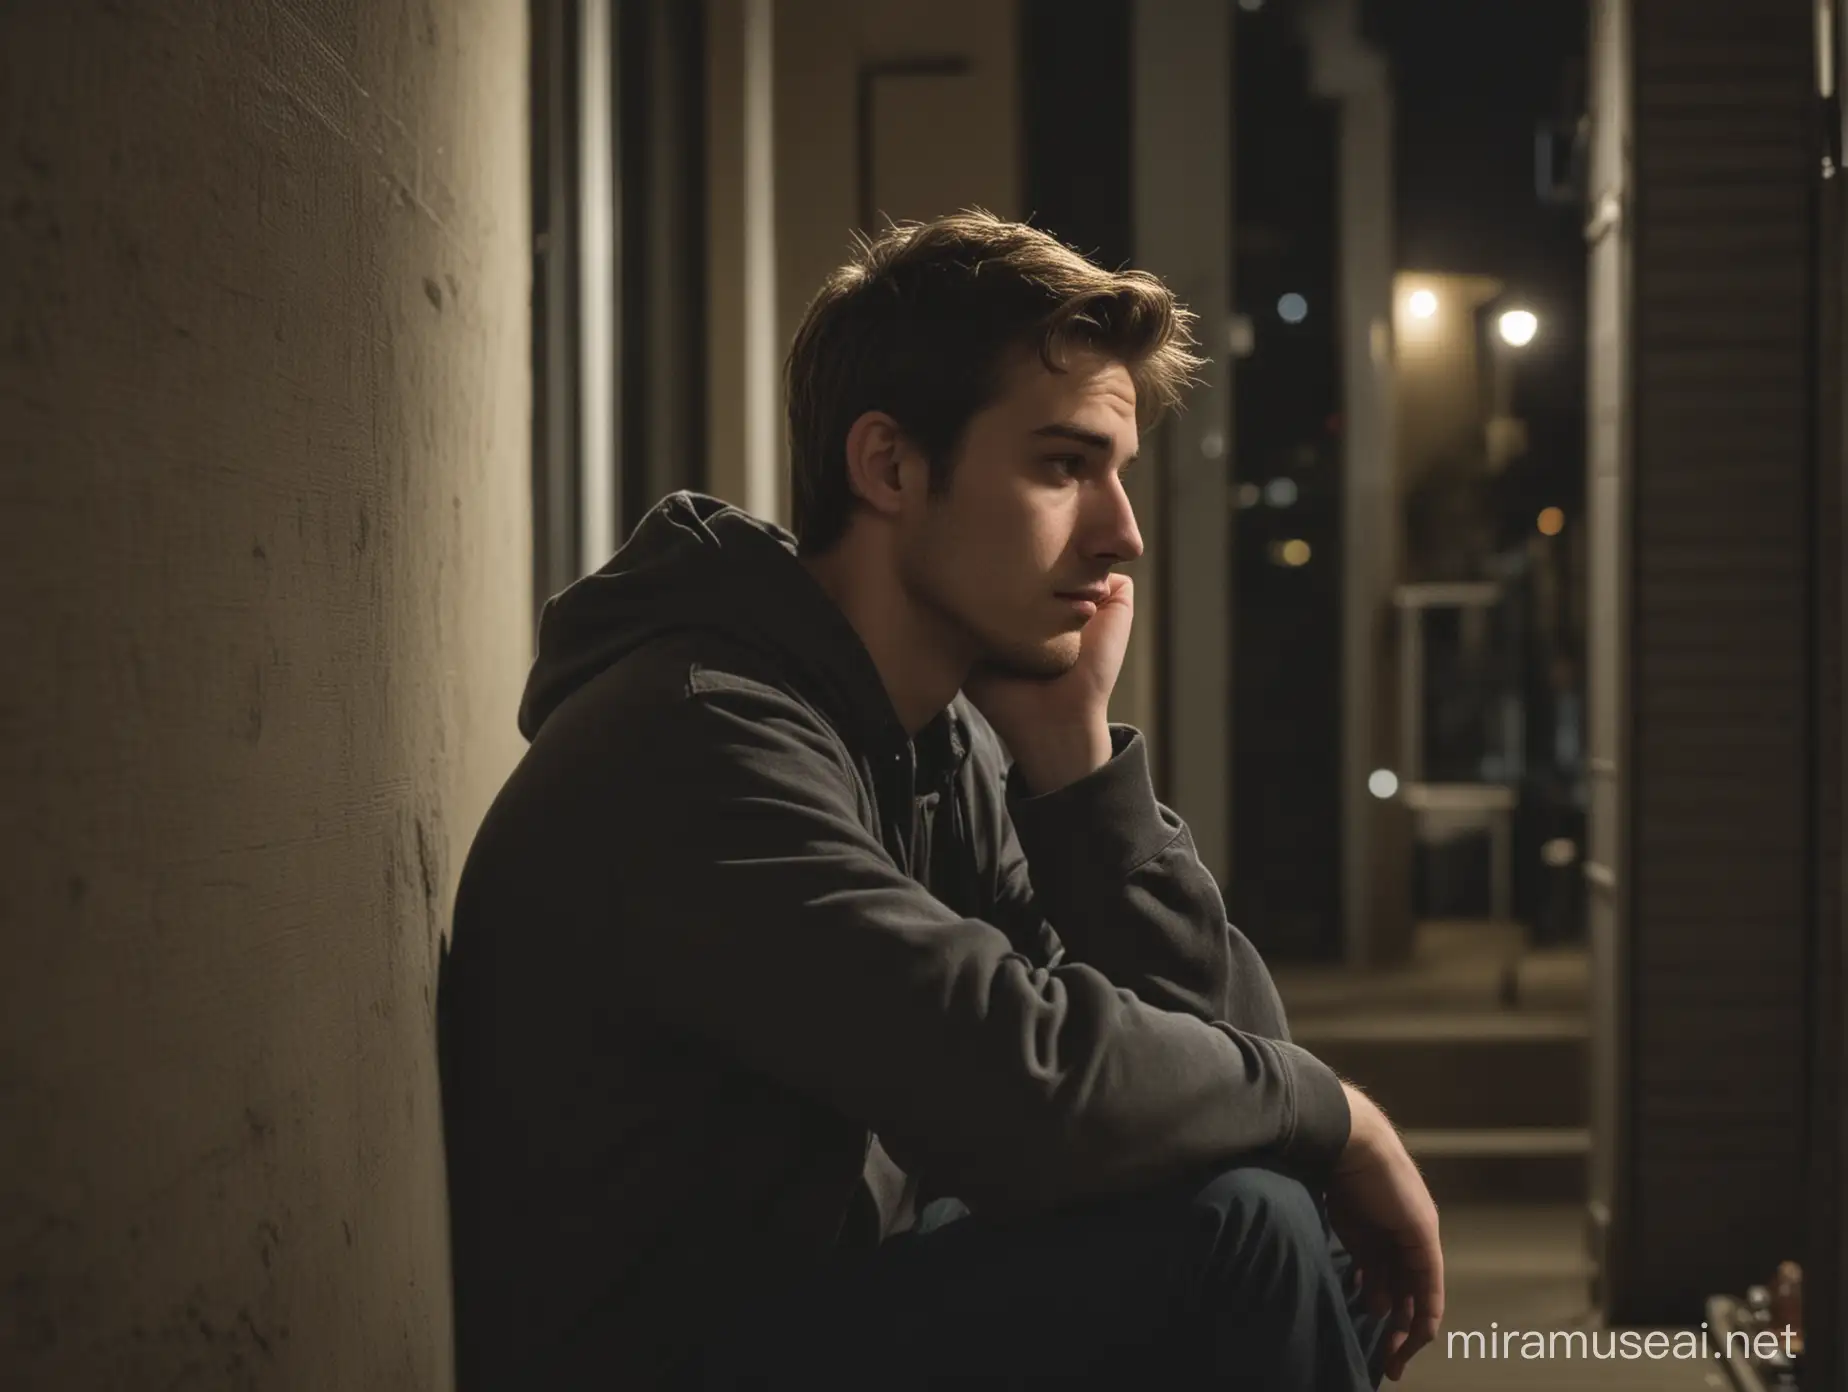 un joven adulto sentado afuera de su departamento en la noche pensativo e inseguro